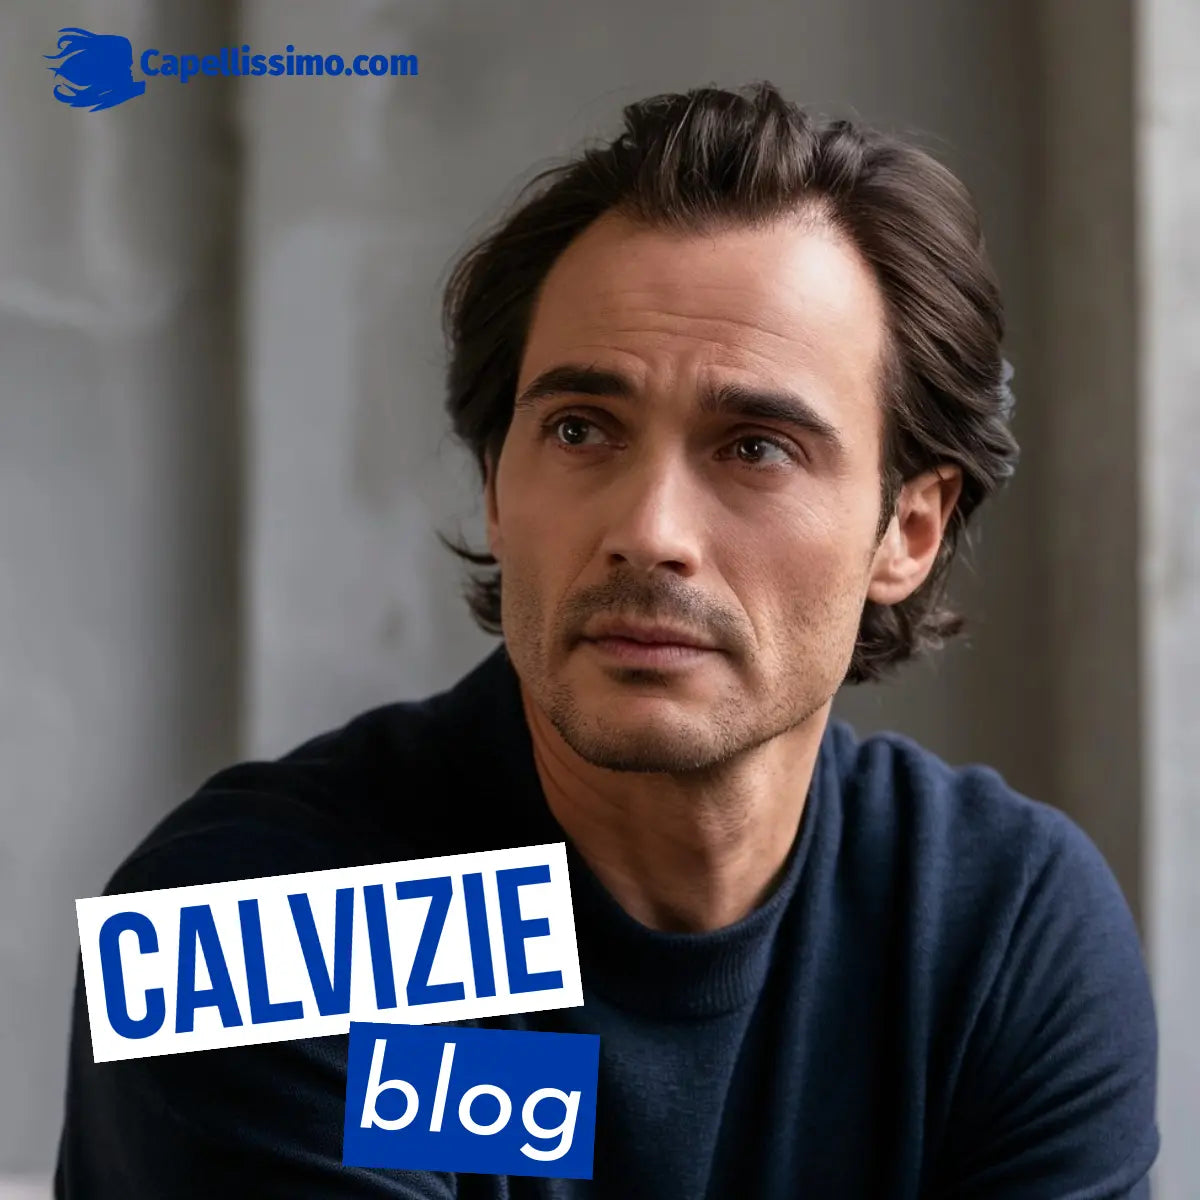 Blog calvizie